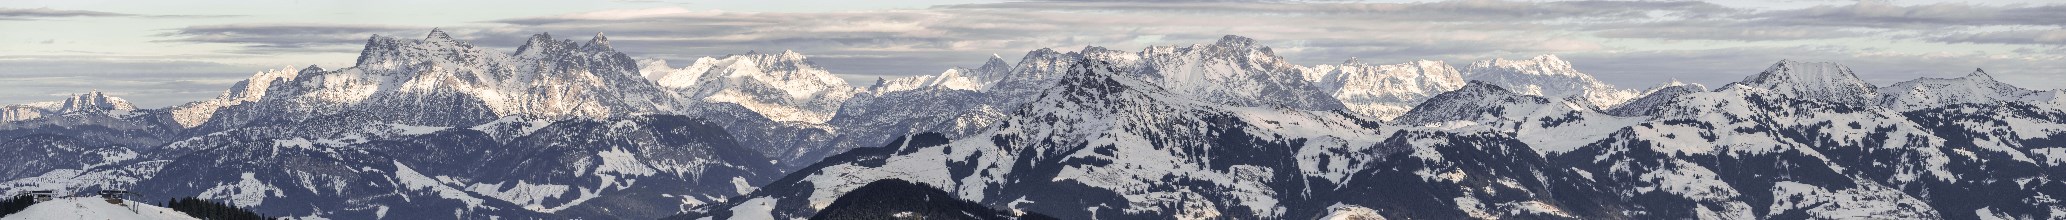 Loferer Steinberge and Kitzbuhler Alps